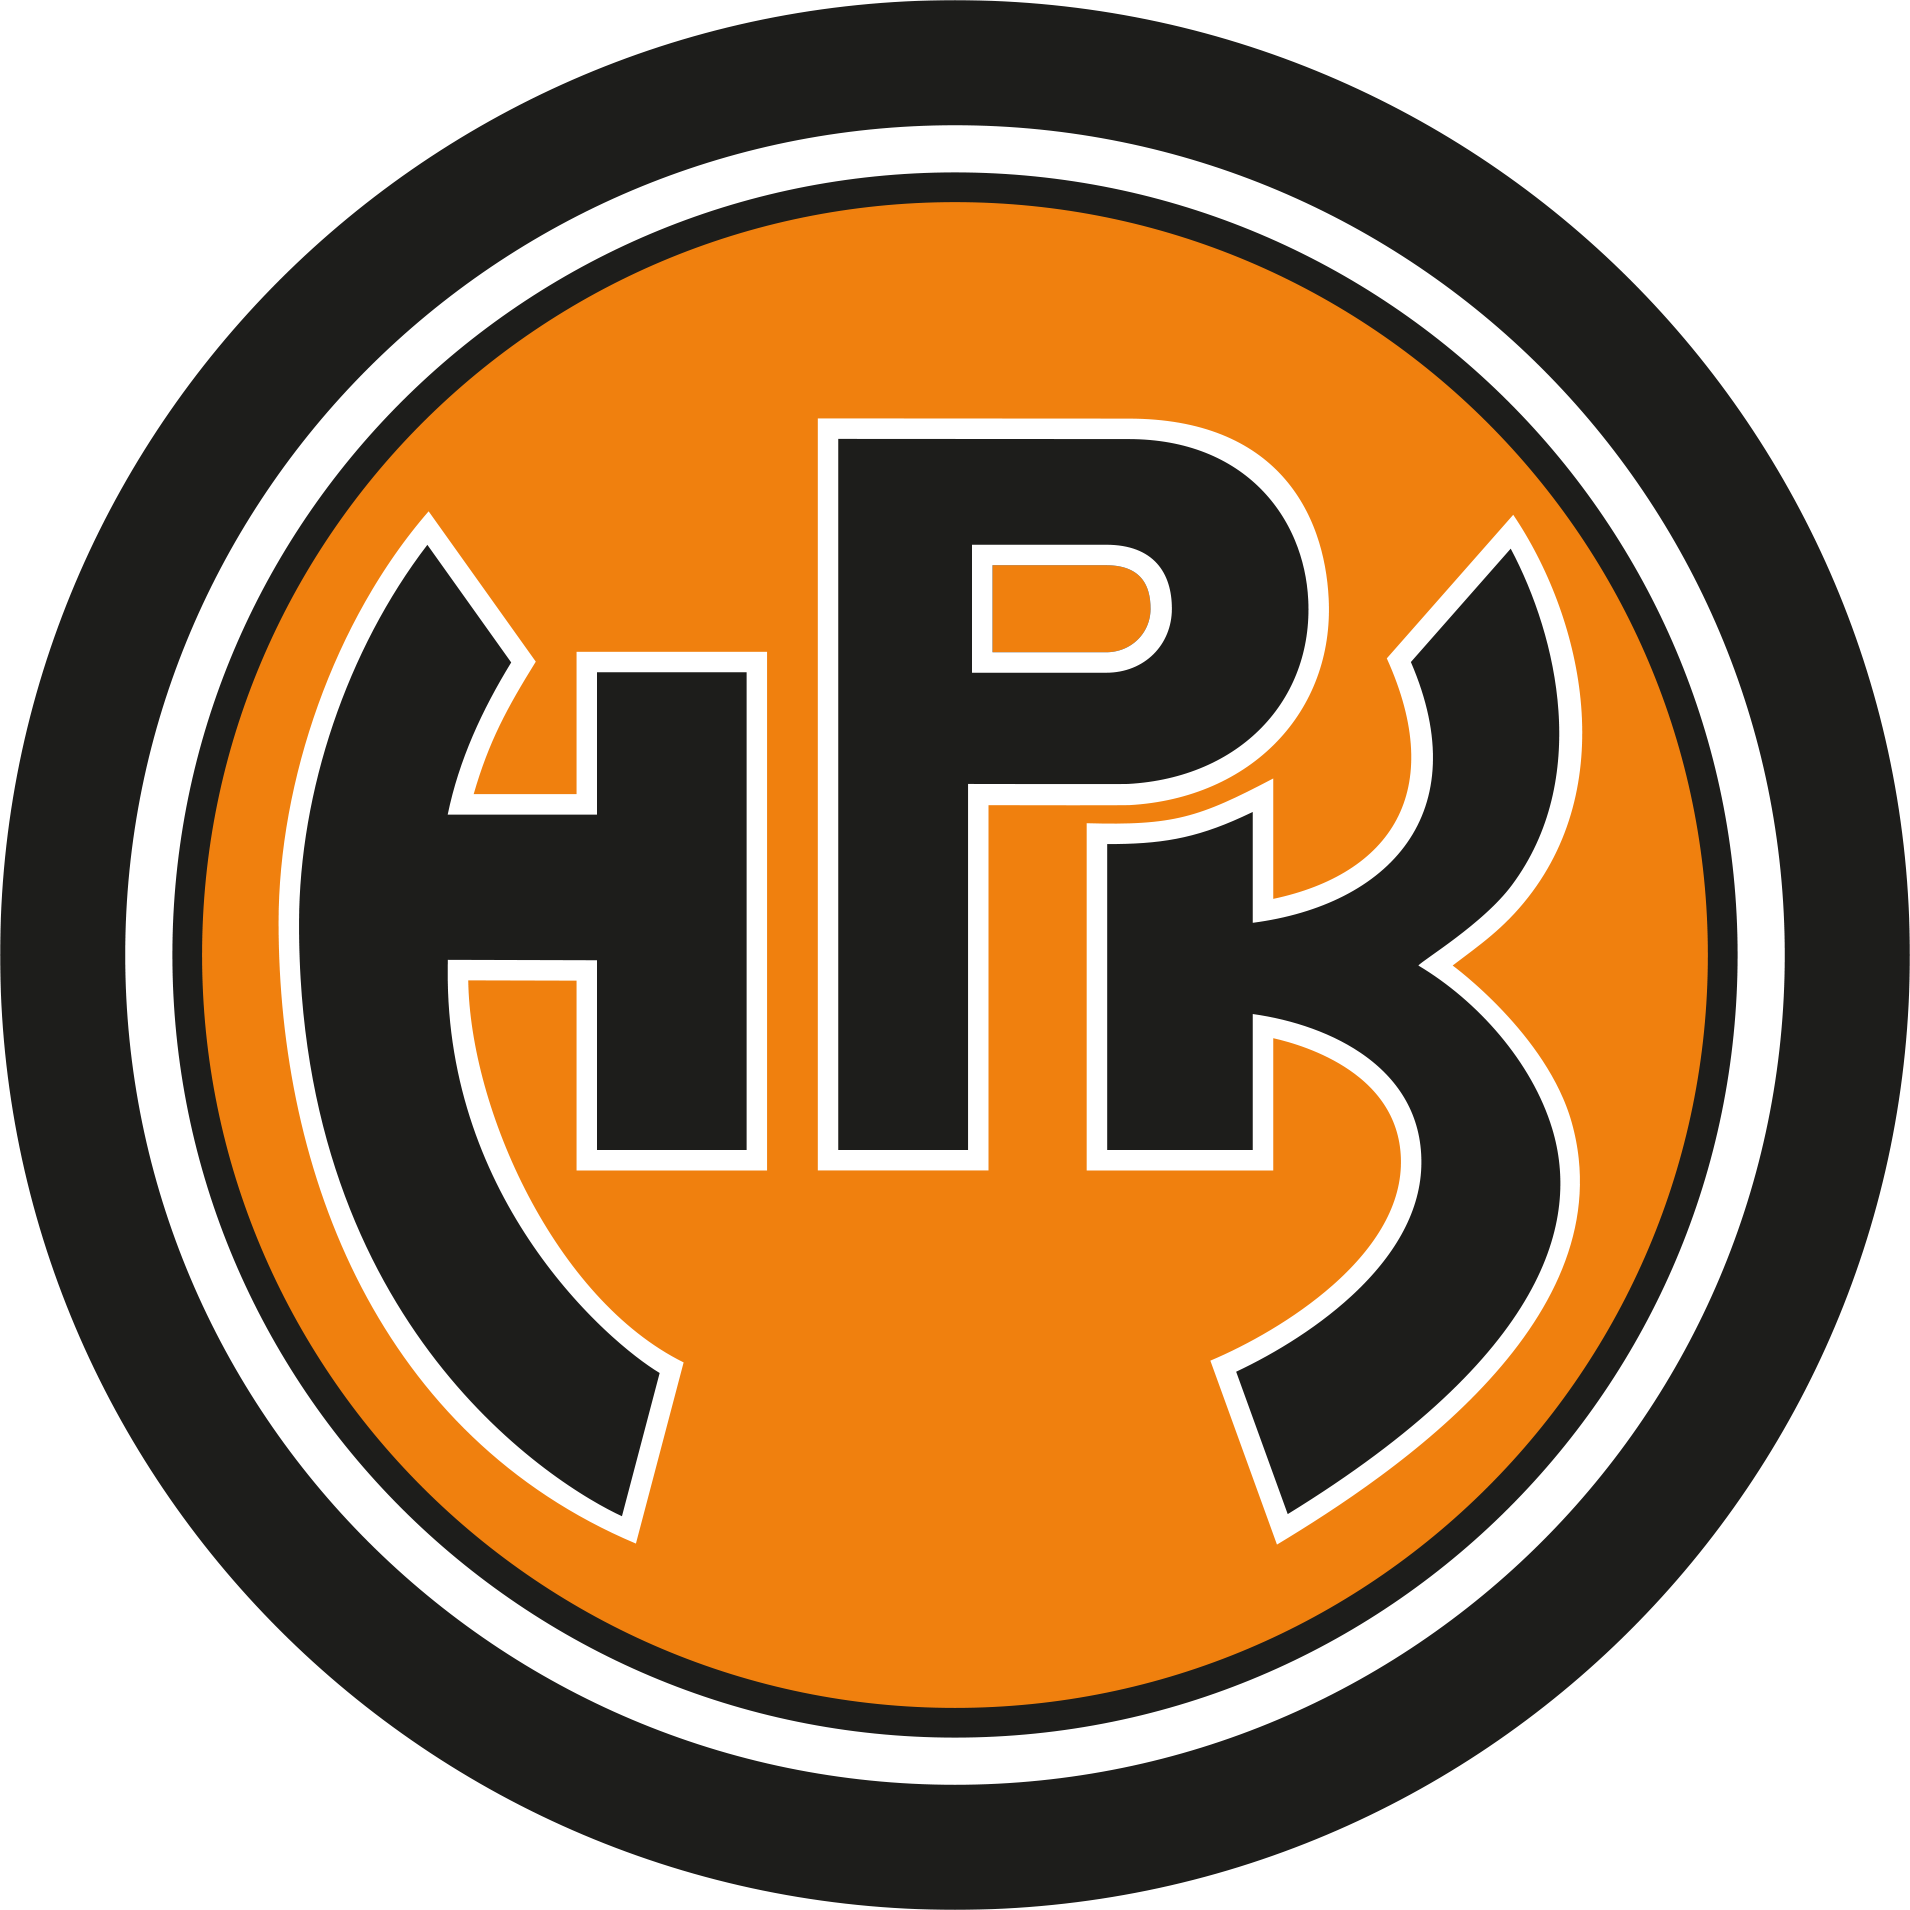 Hpk-logo